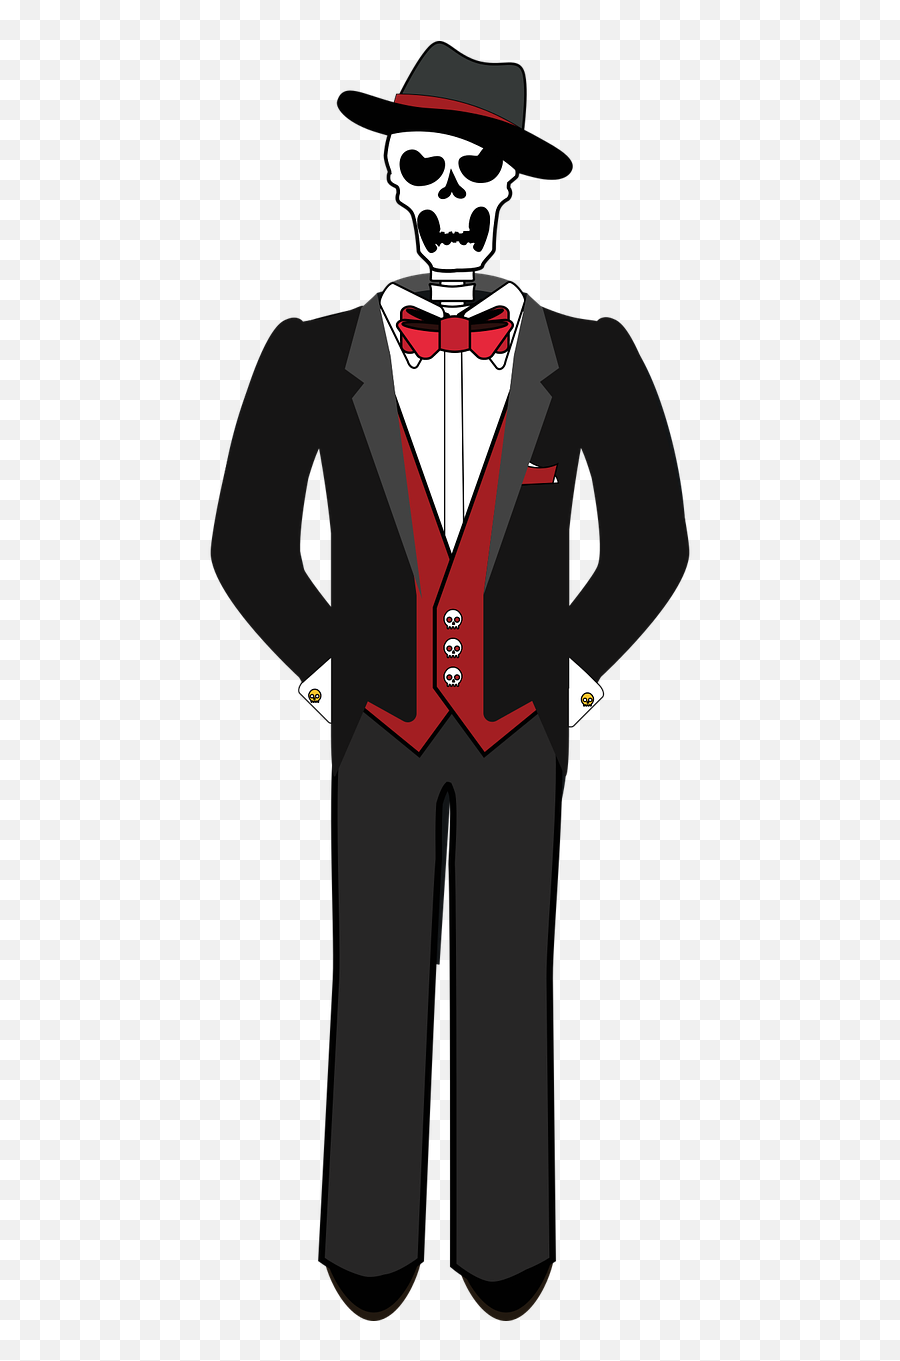 Download Free Photo Of Graphic Skeleton Tuxedo Tux Suit - Skeleton Drawing With Suit Emoji,Mardi Gras Emoji